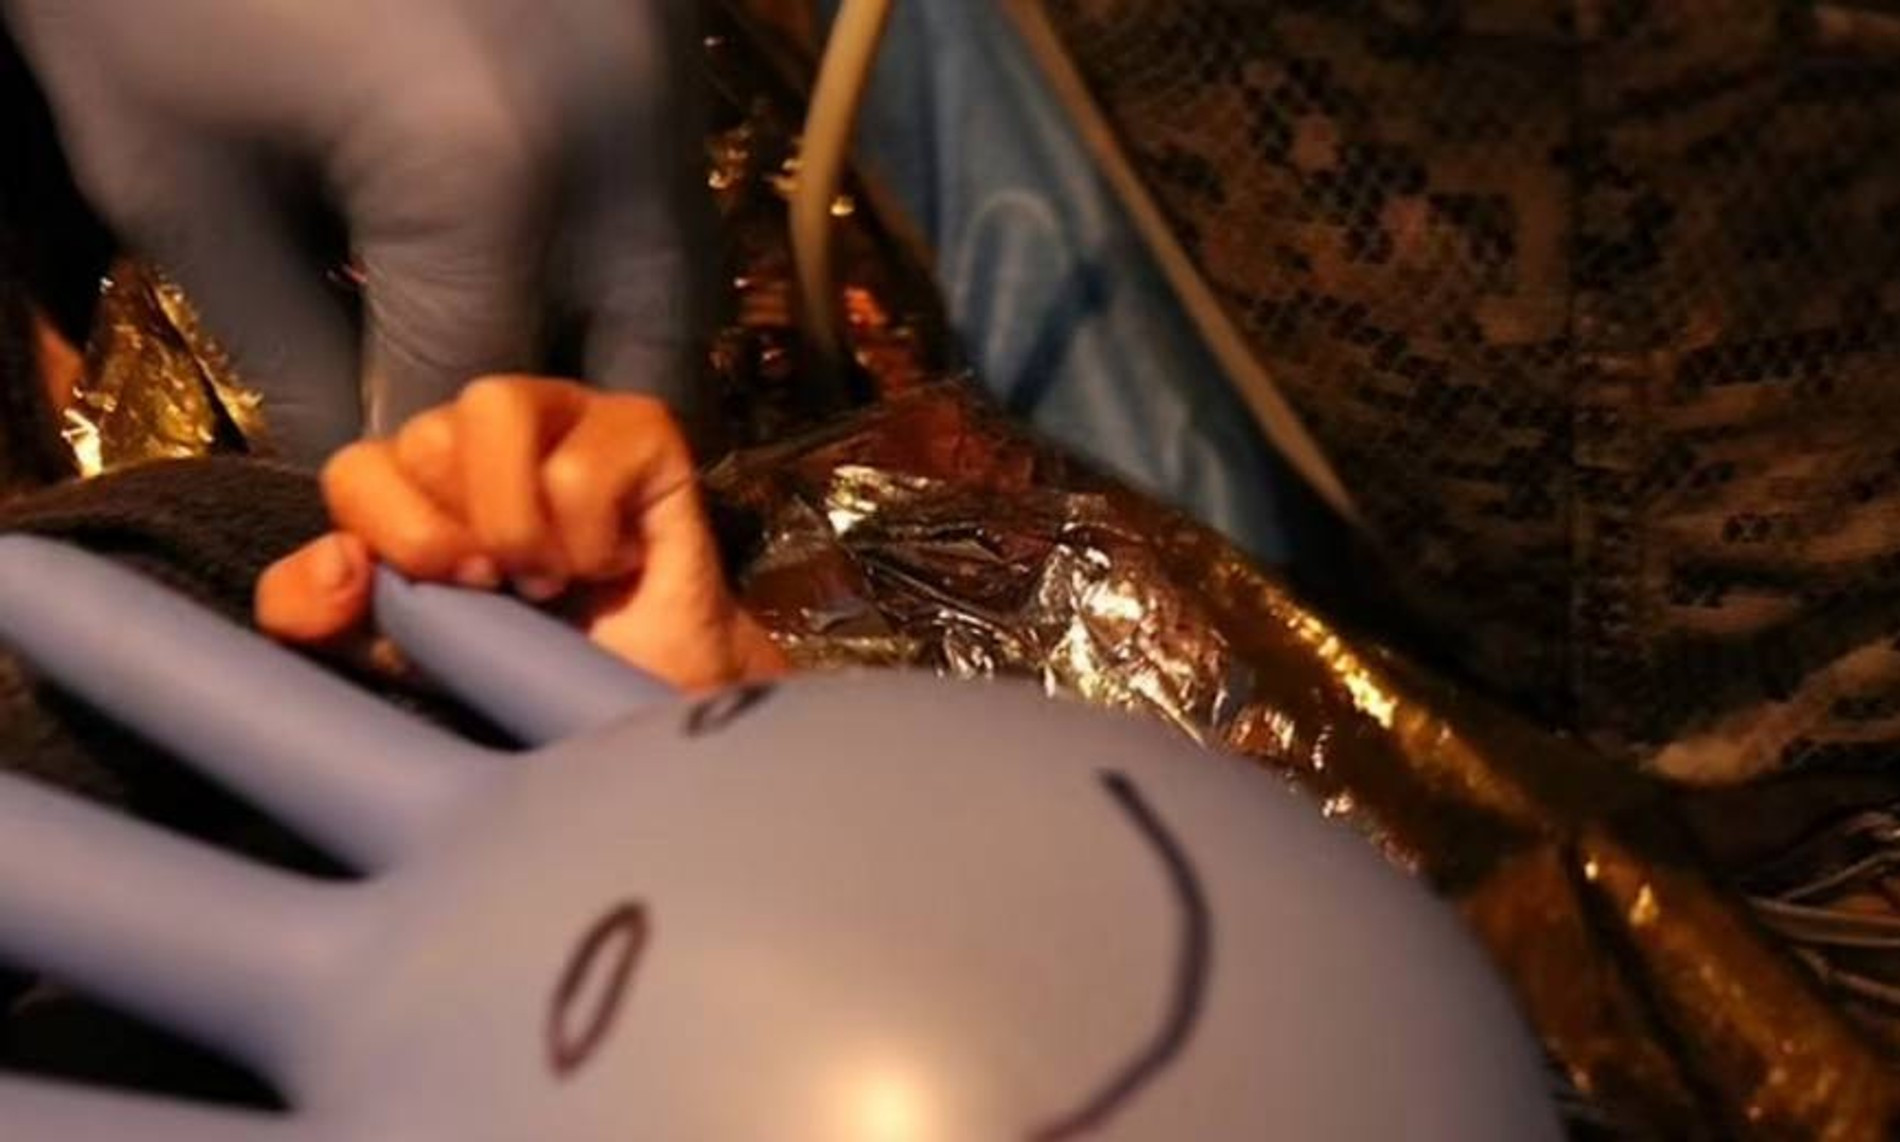 Один из детей с медицинской перчаткой, на которой спасатель нарисовал забавную рожицу
Фото: Daily Mail